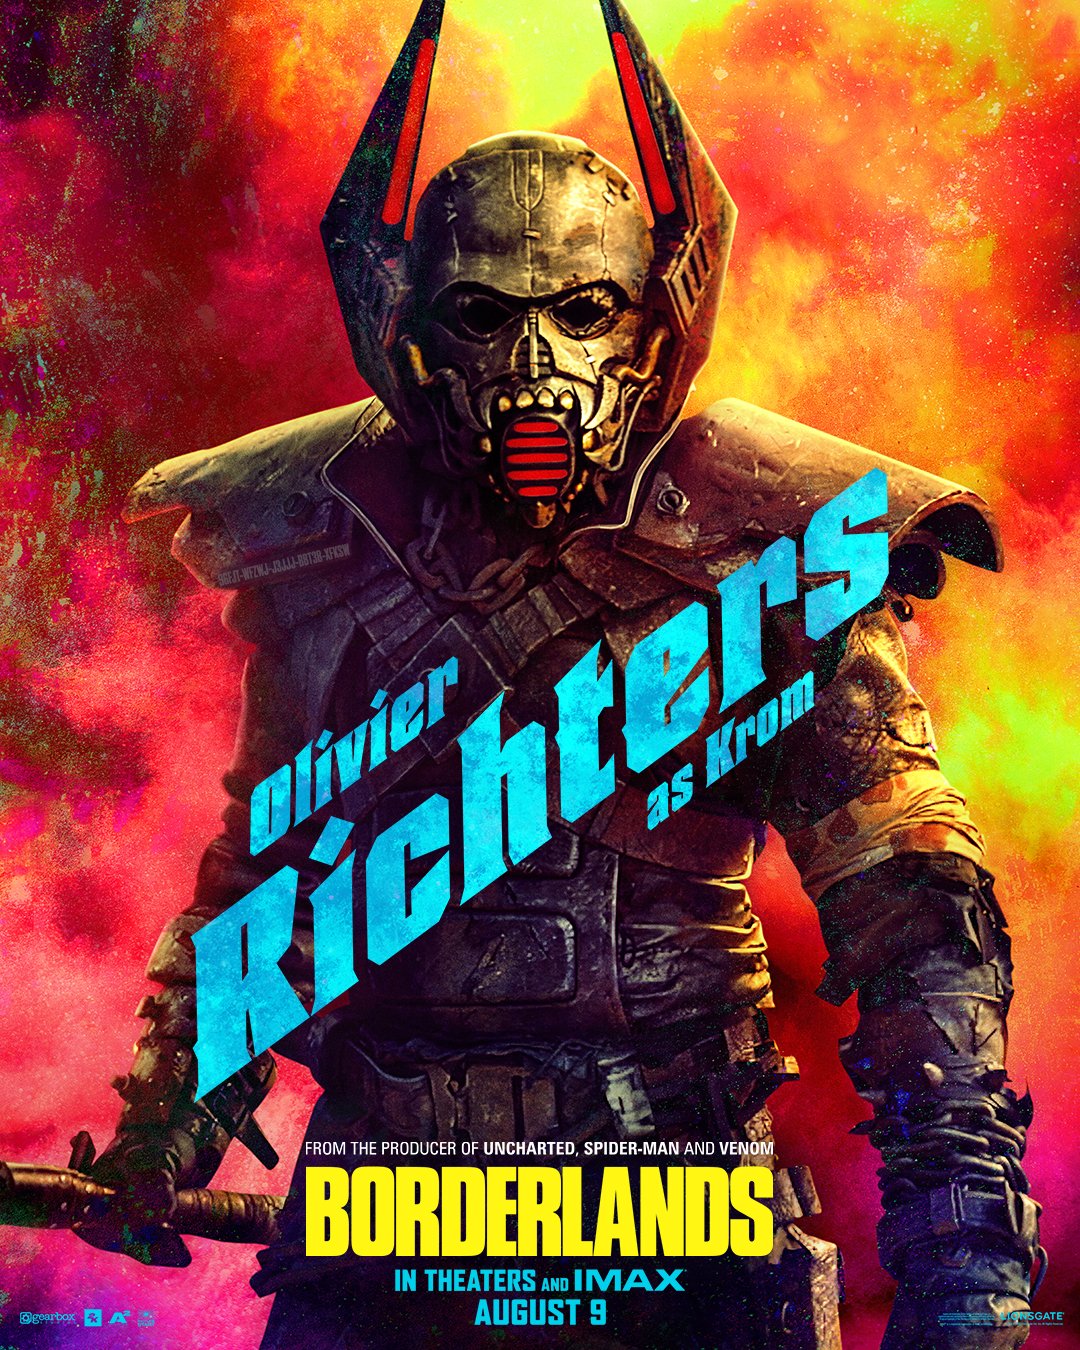 Постеры с персонажами Borderlands в центре внимания игрового фильма со второстепенным актерским составом